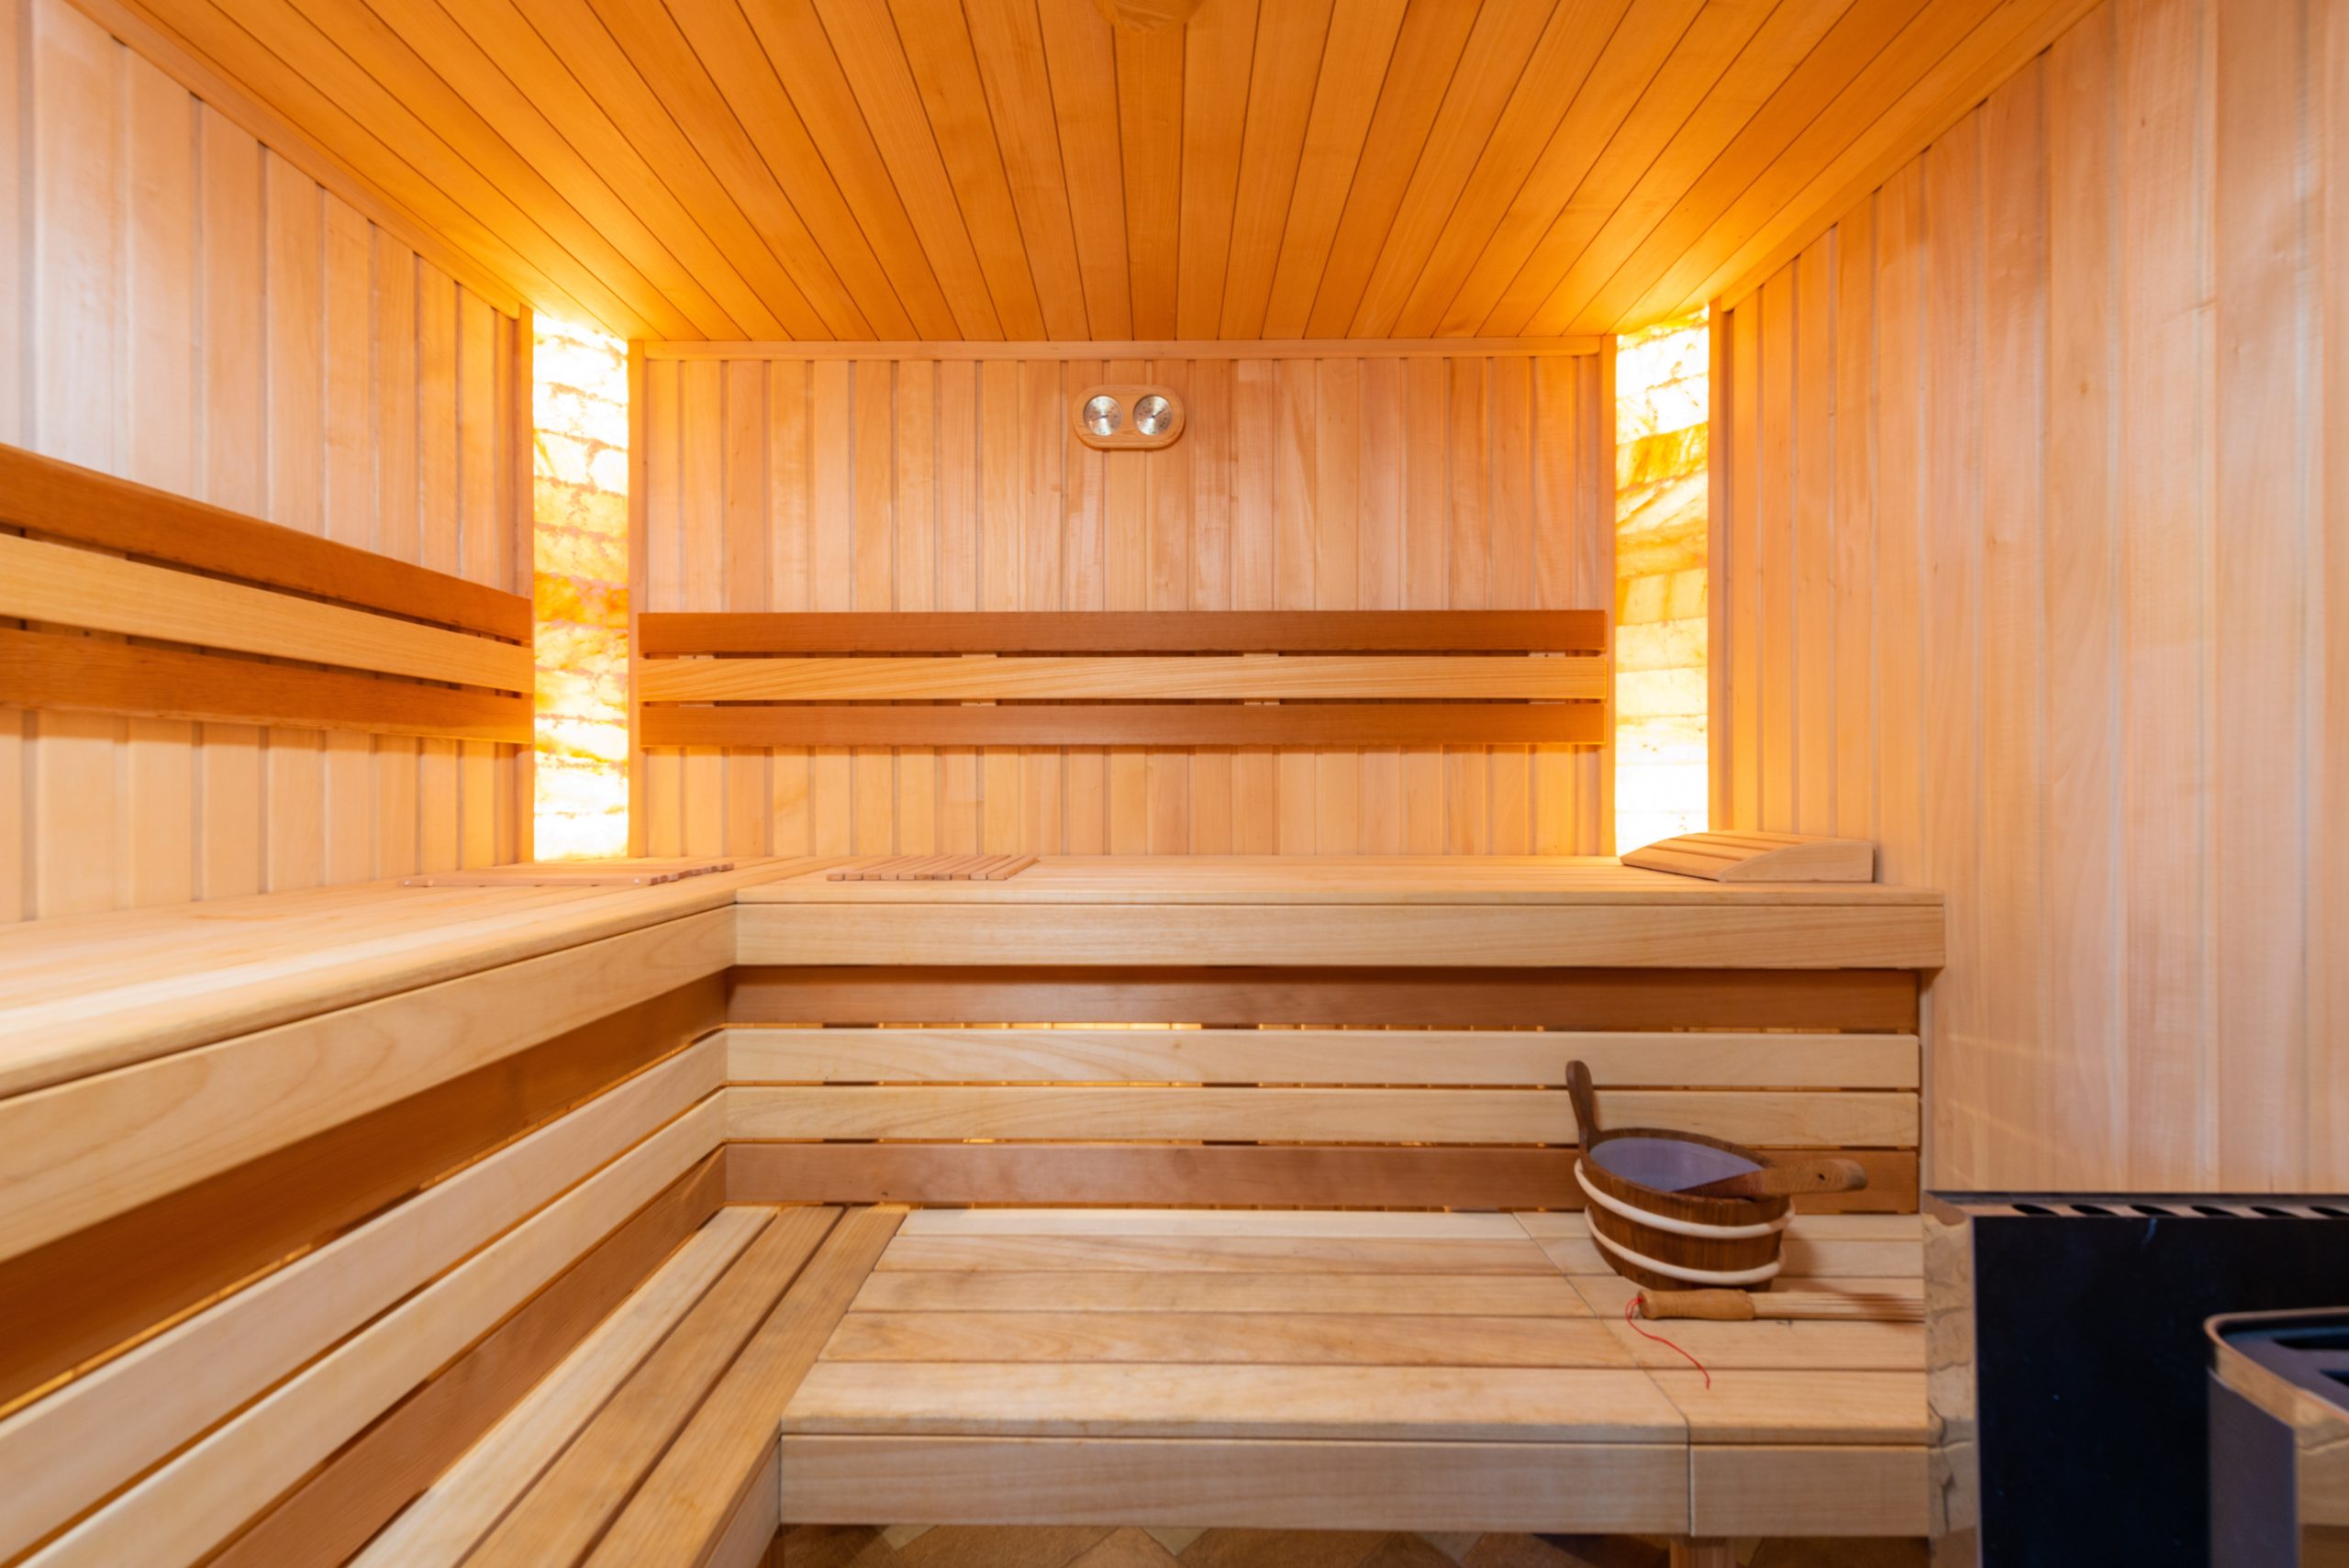 Sú sauny zdravé alebo škodlivé?